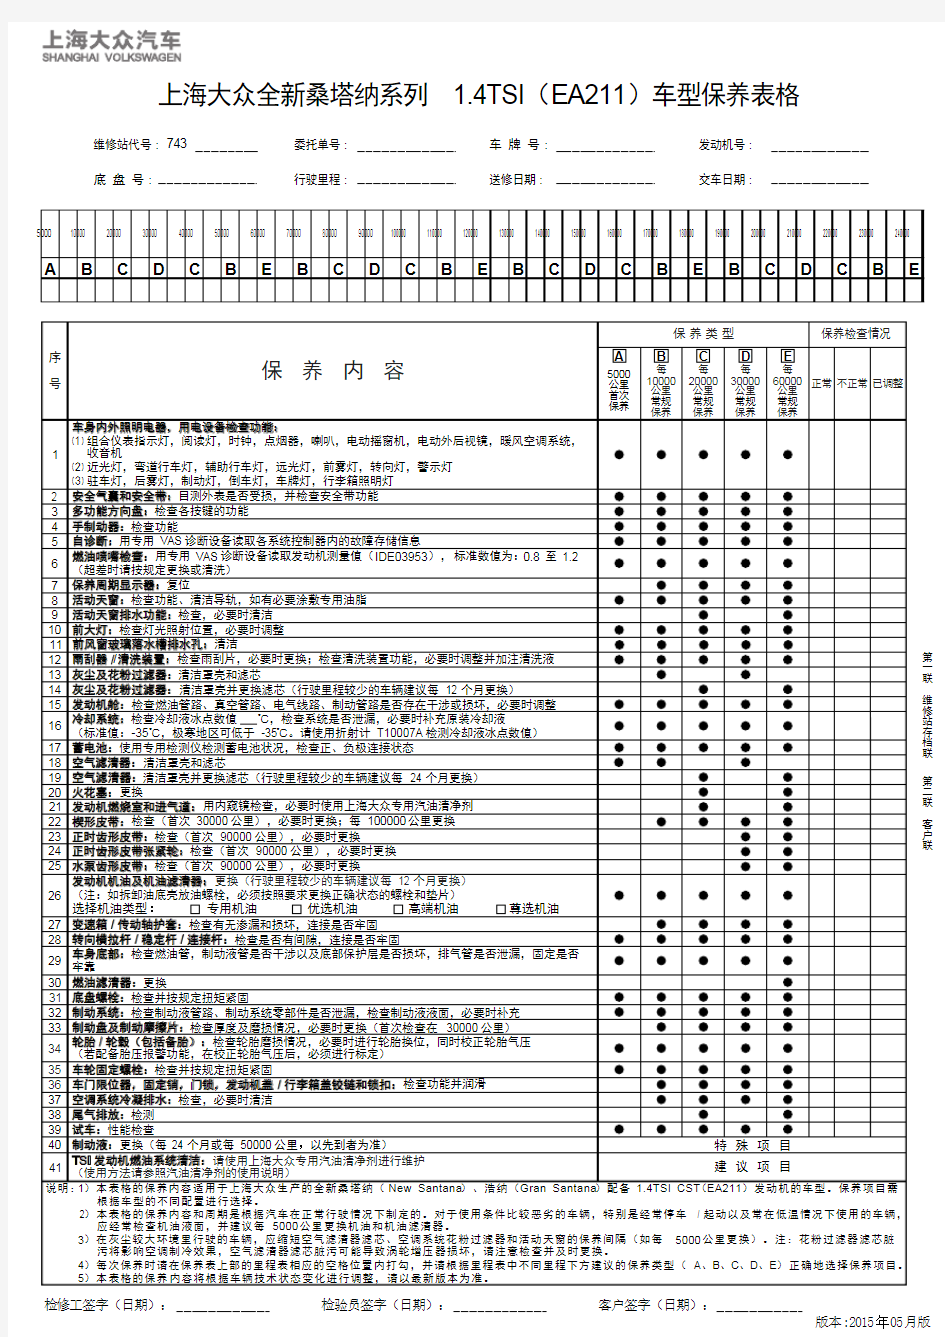 上海大众全新桑塔纳系列 1.4TSI(EA211)车型保养表格